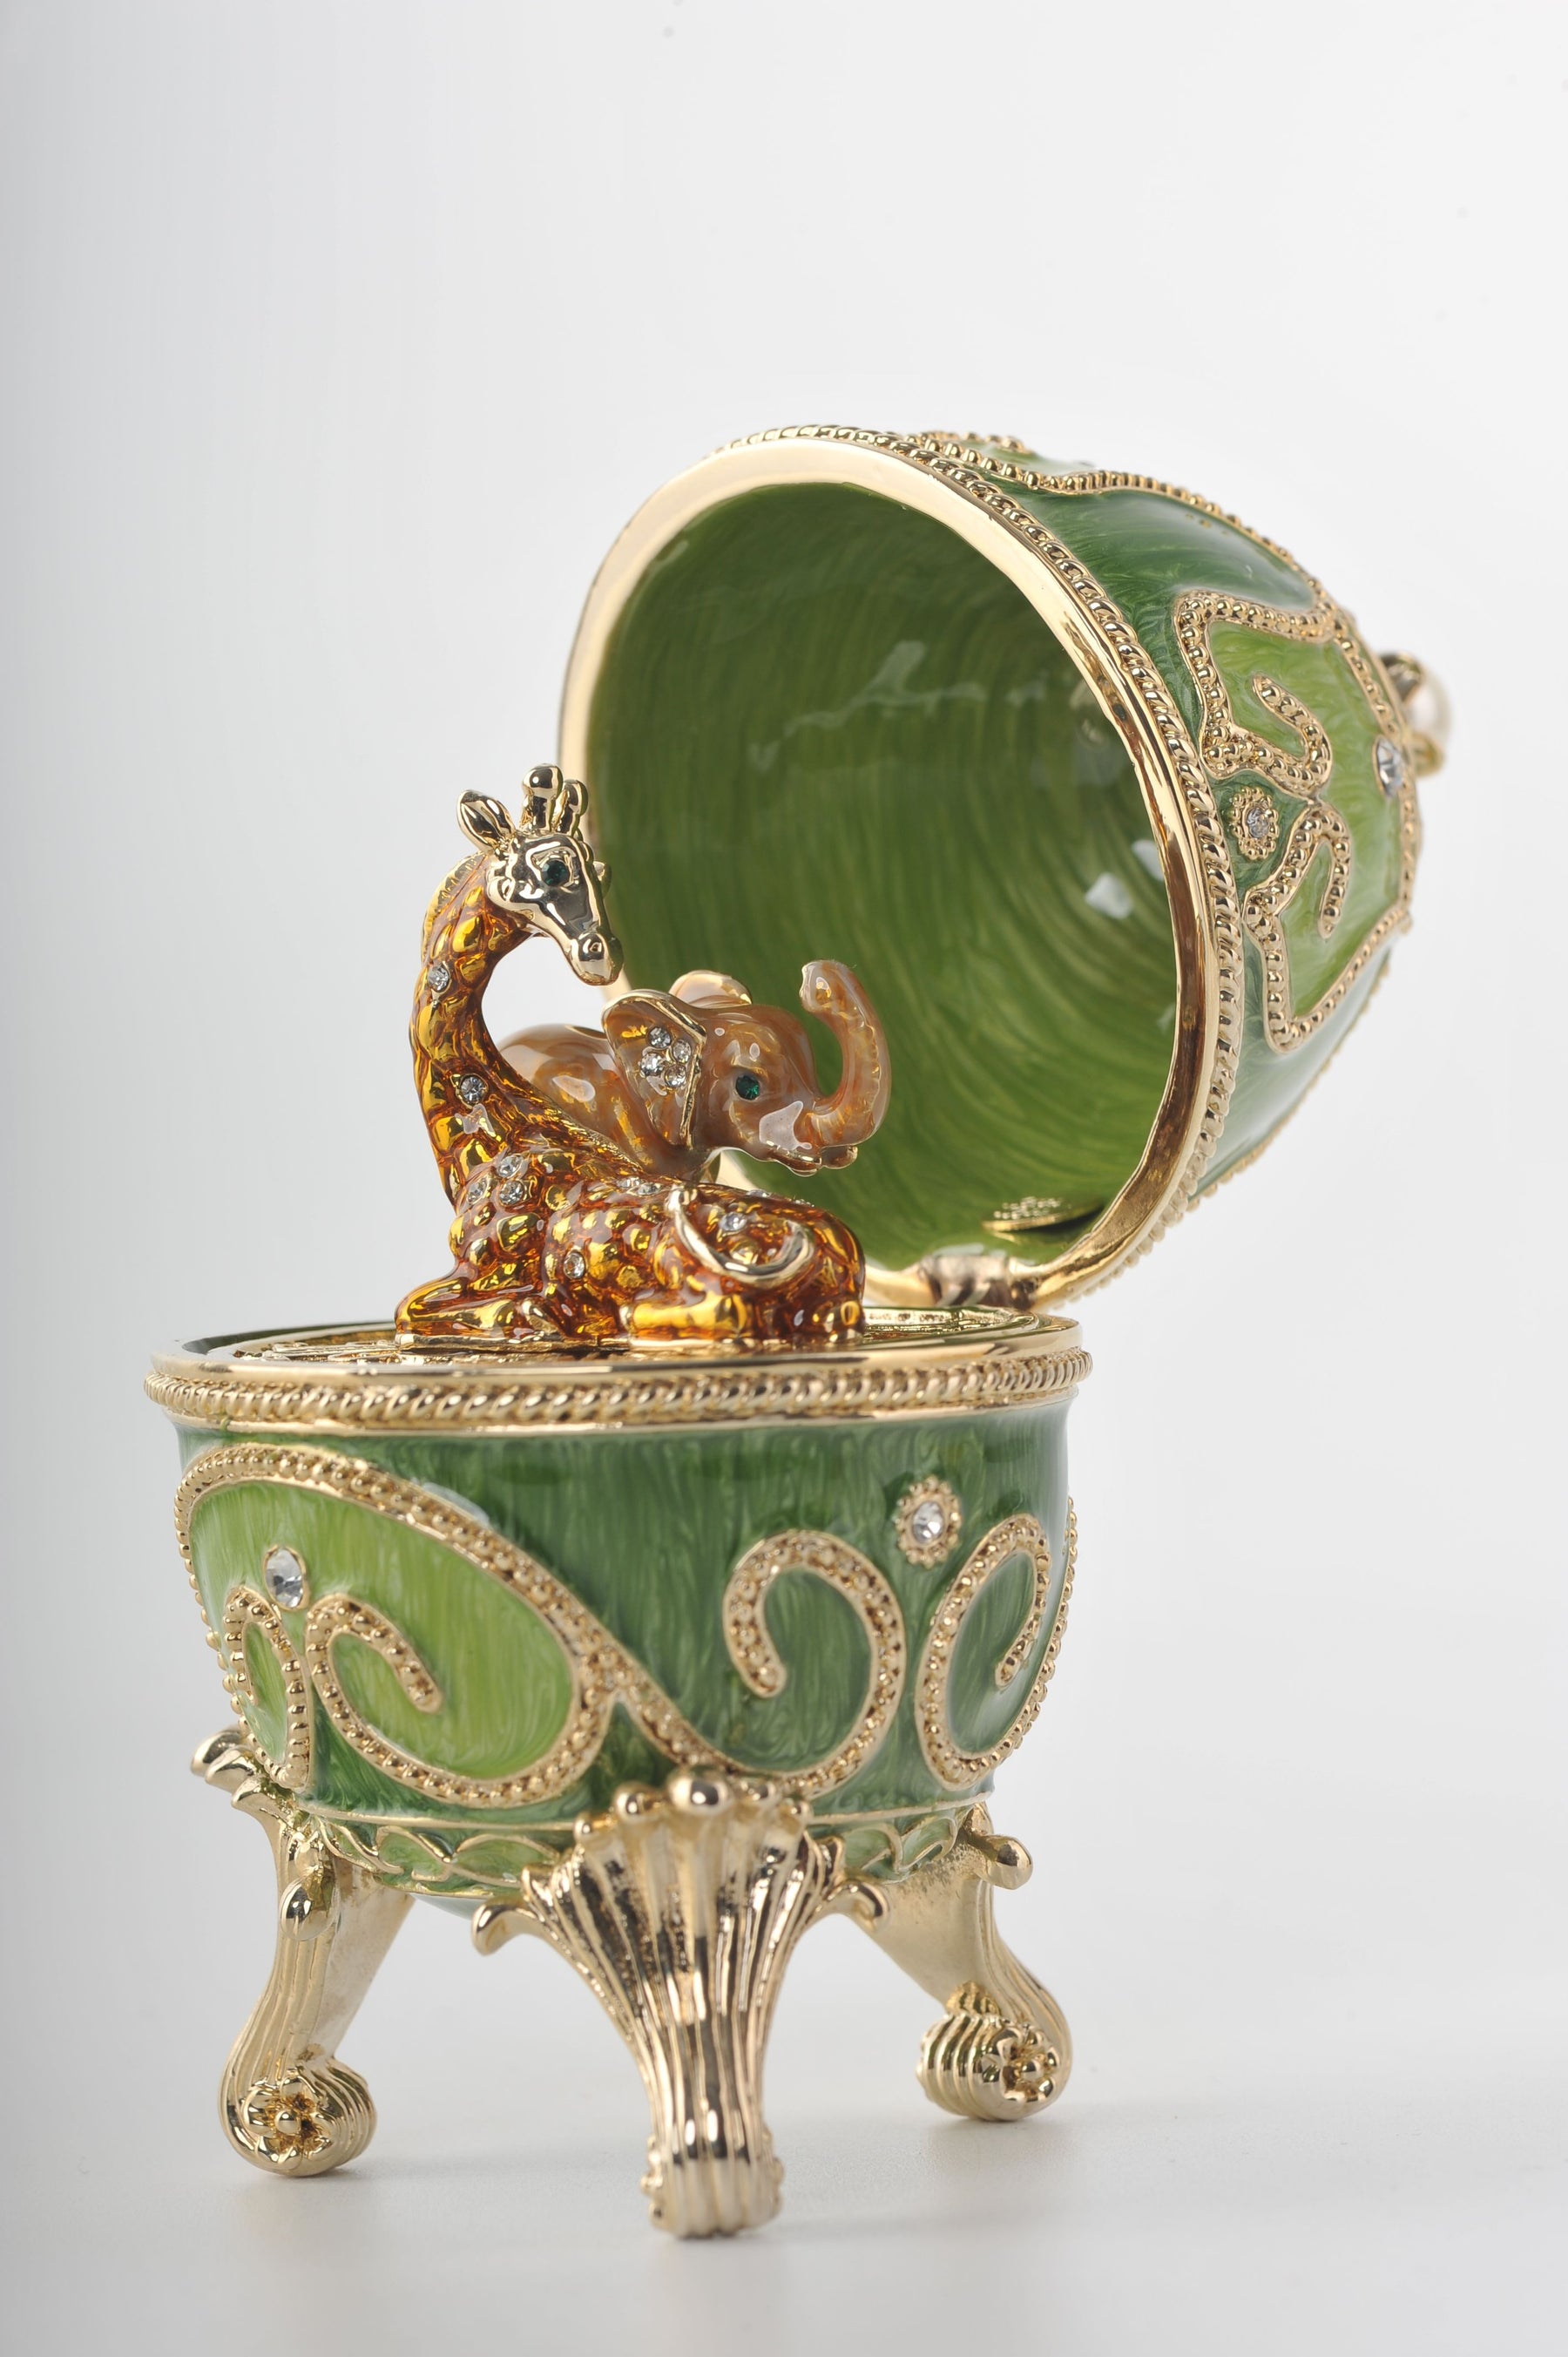 Keren Kopal Green Faberge Egg with Animals Inside  104.00